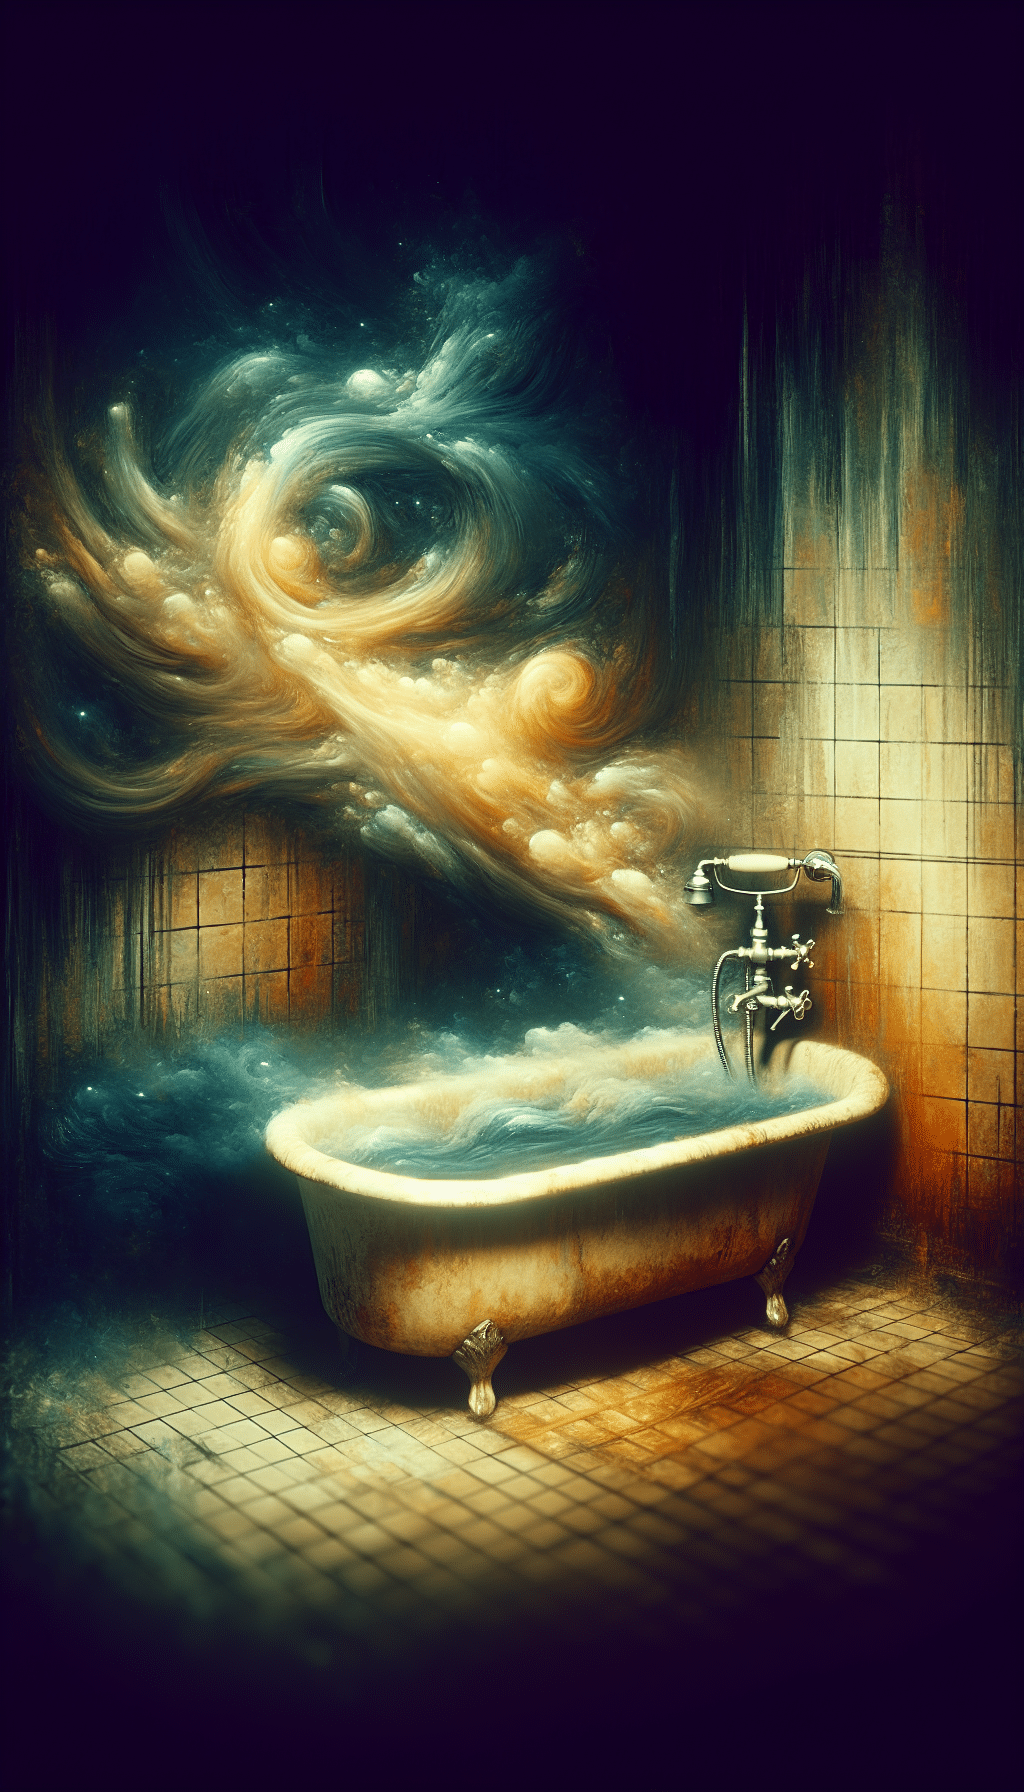 Dirty Bathtub Dream Explanation